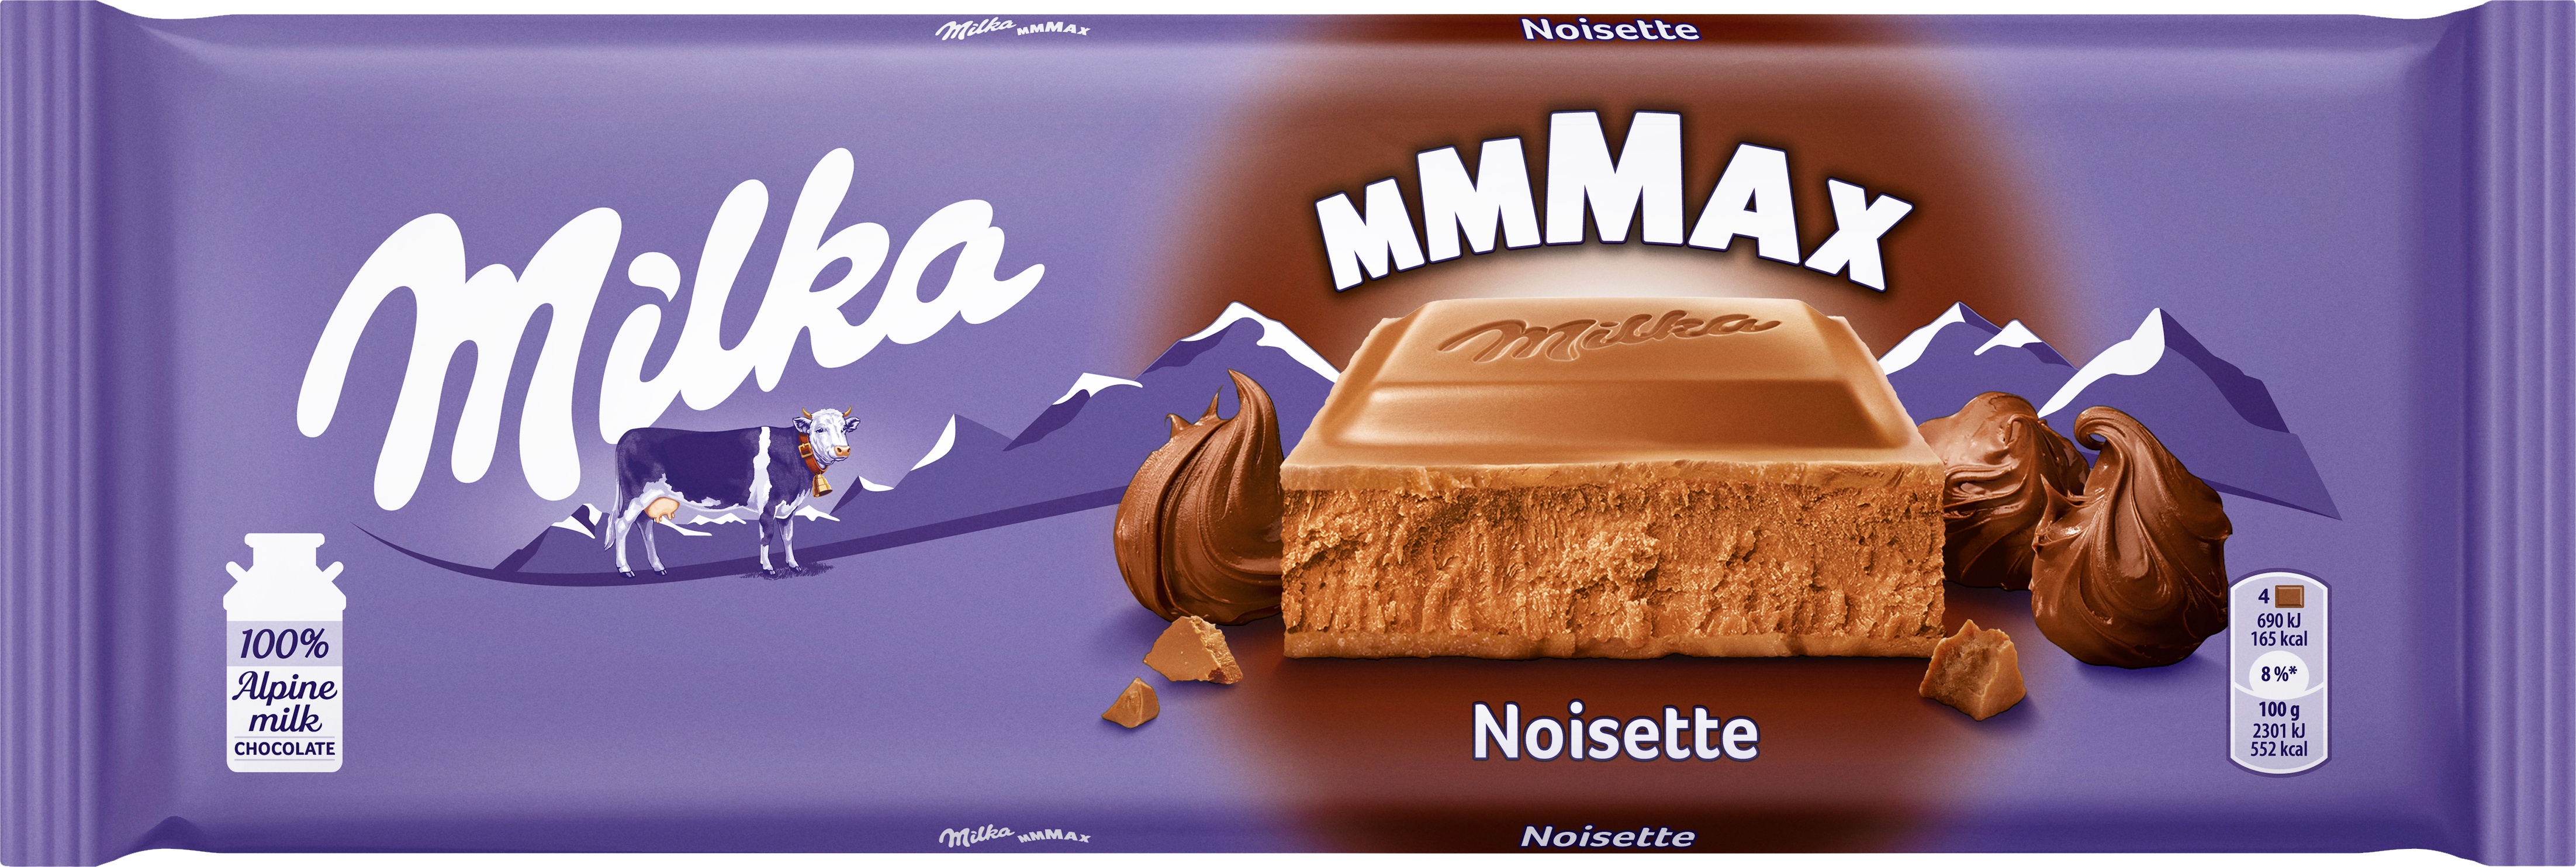 Slika za Čokolada noissette Milka 270g